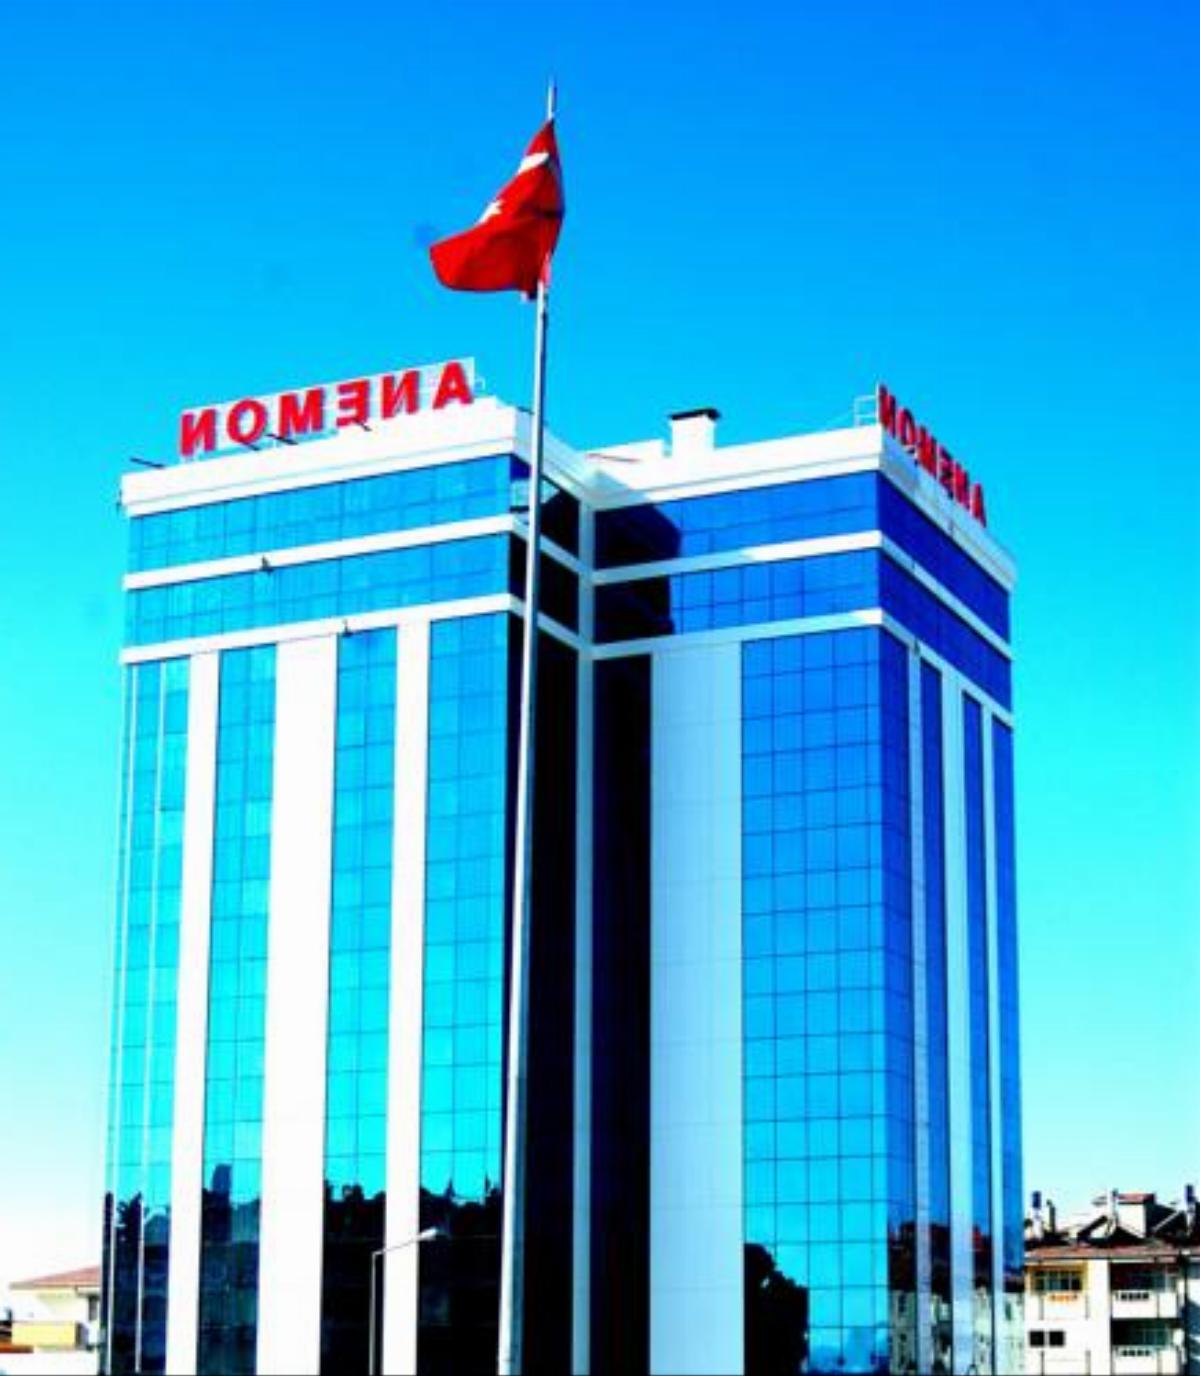 Anemon Konya Hotel Konya Turkey